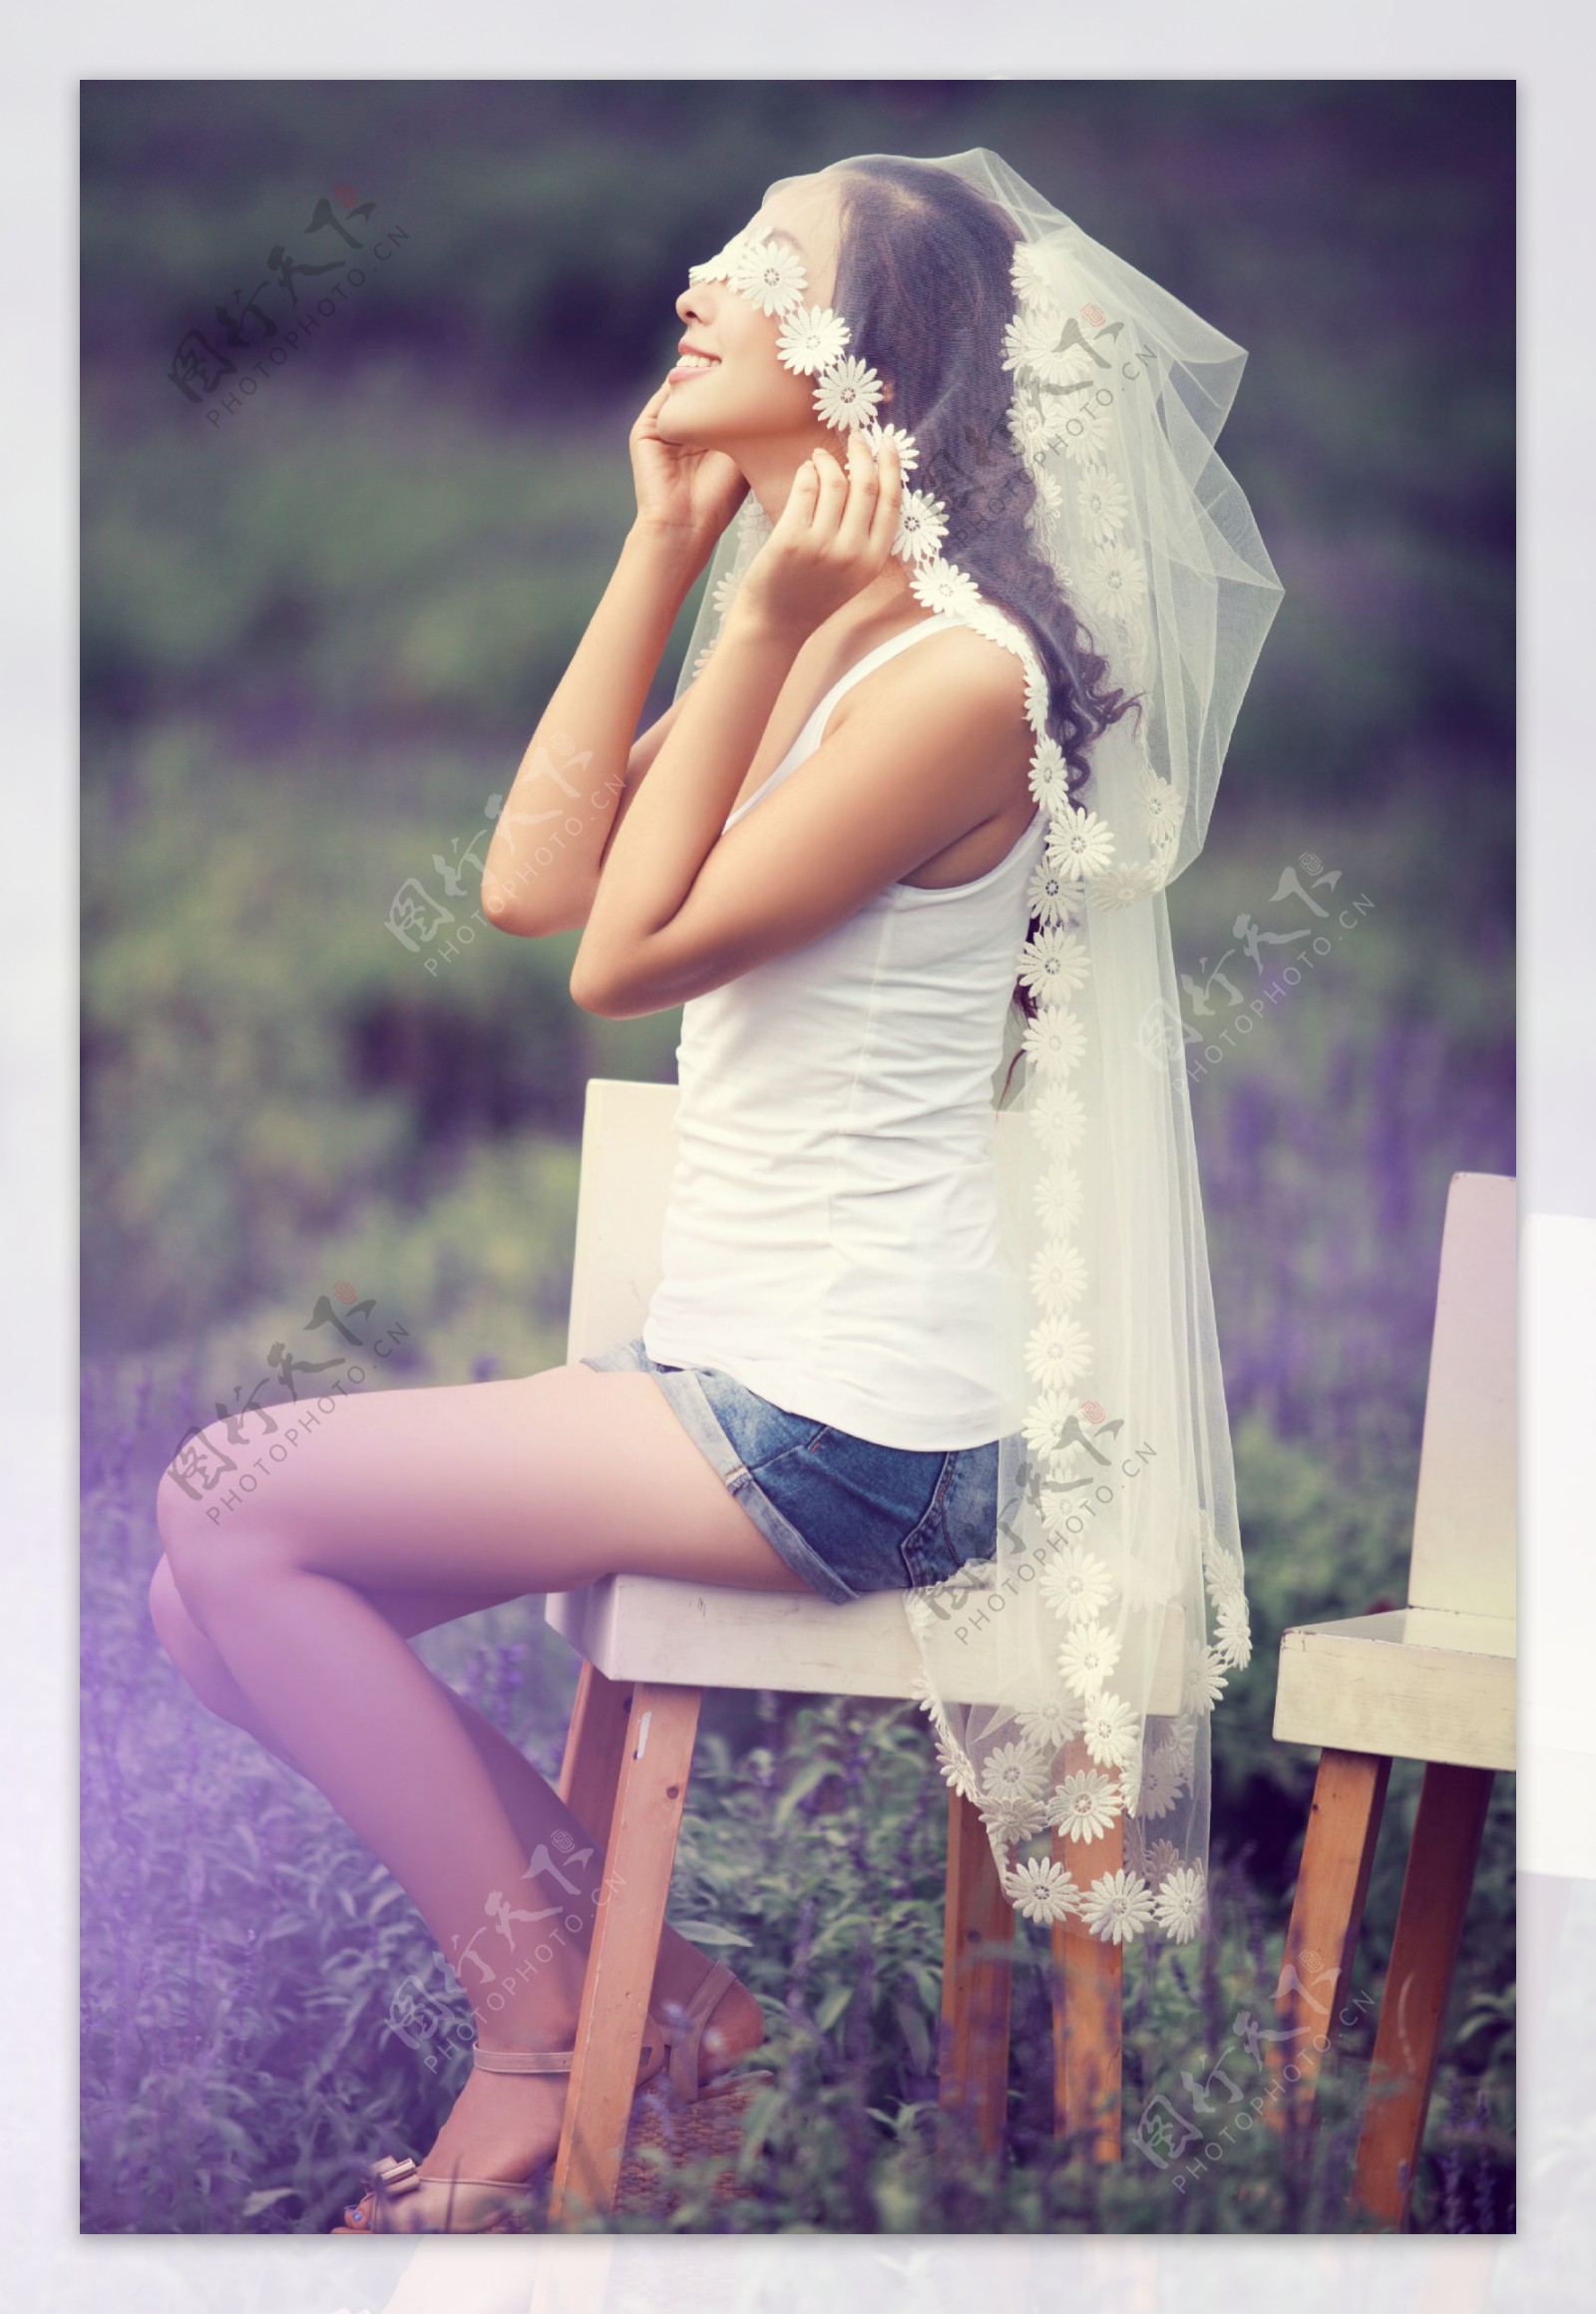 坐在椅子上的美女新娘图片